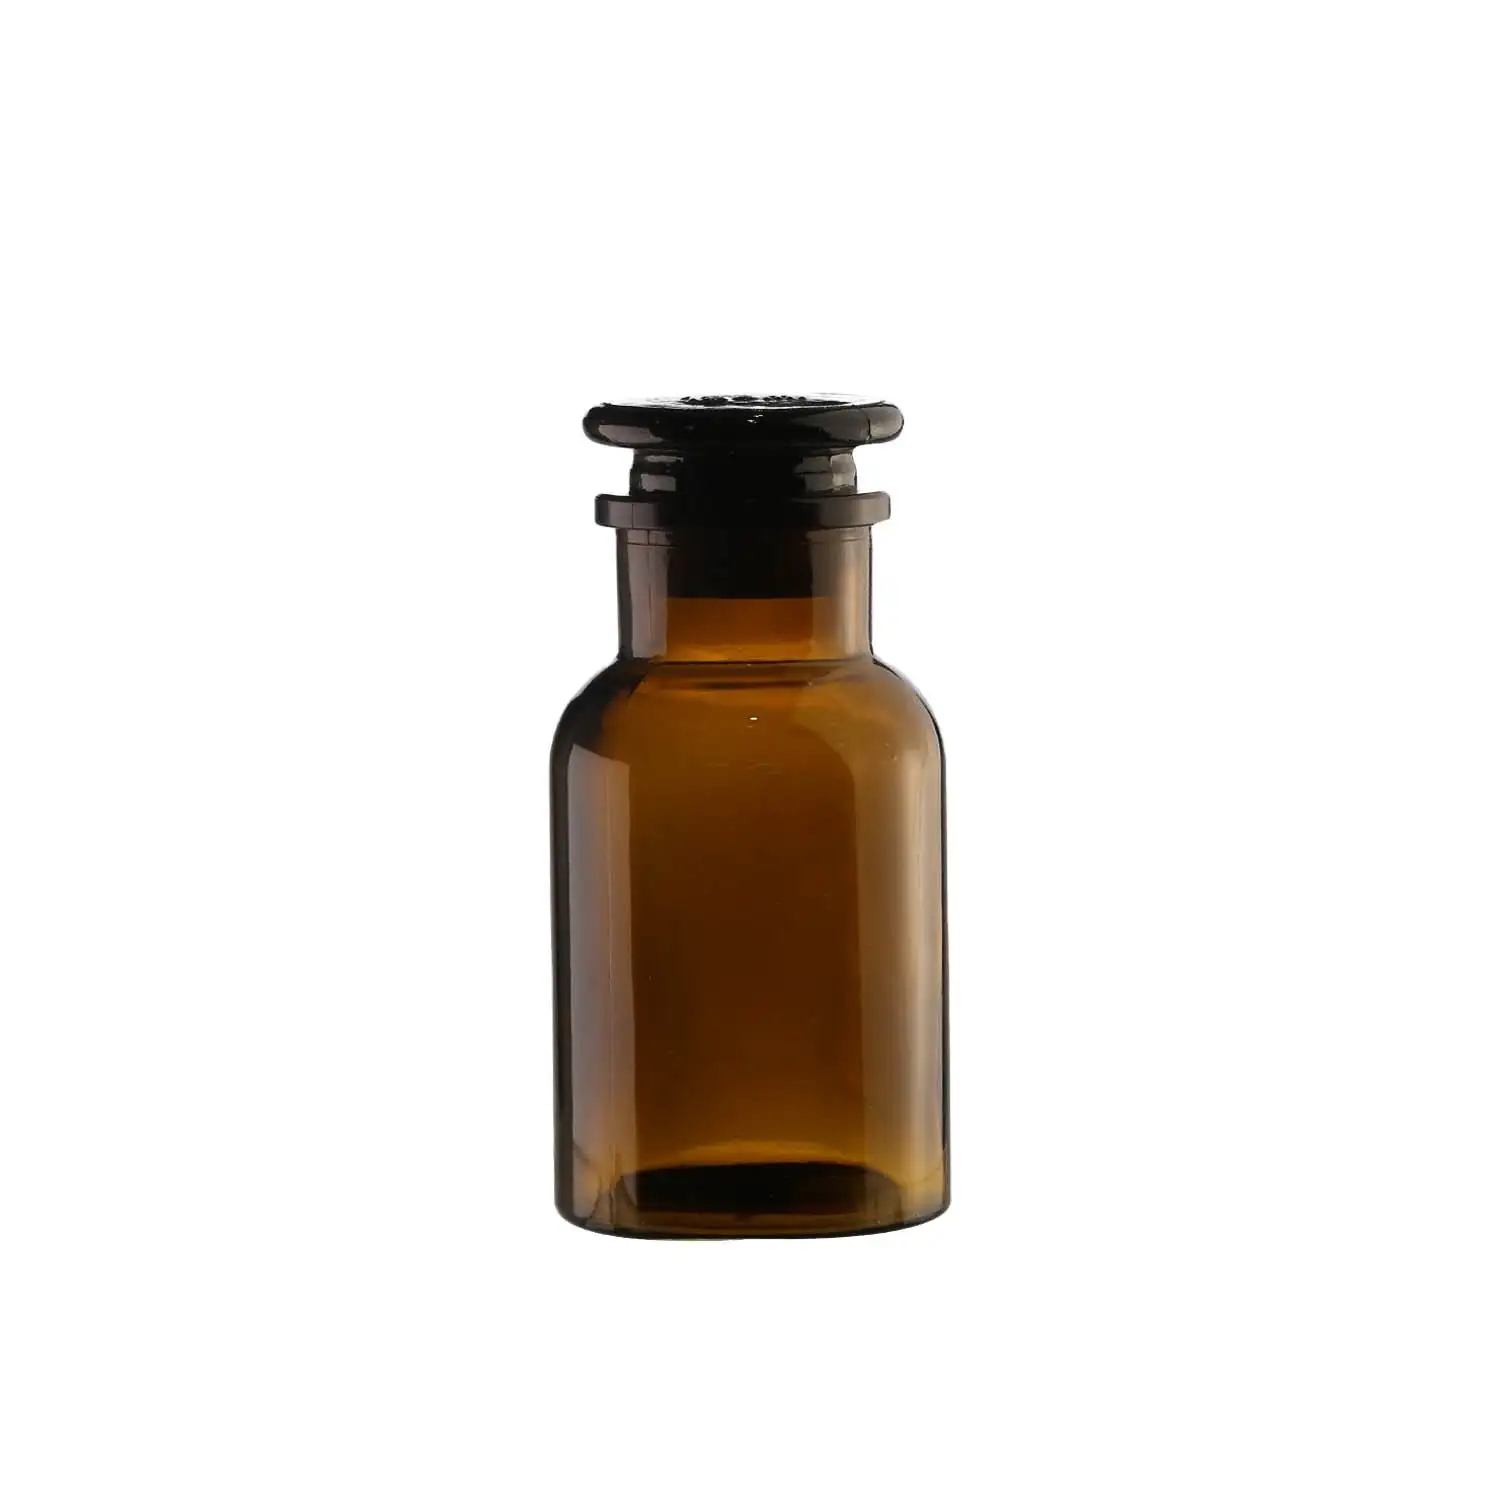 140ml kahverengi cam şişe Amber uçucu yağ korumalı cam şişe kozmetik dağıtıcı geniş ağız reaktif örnekleme şişesi